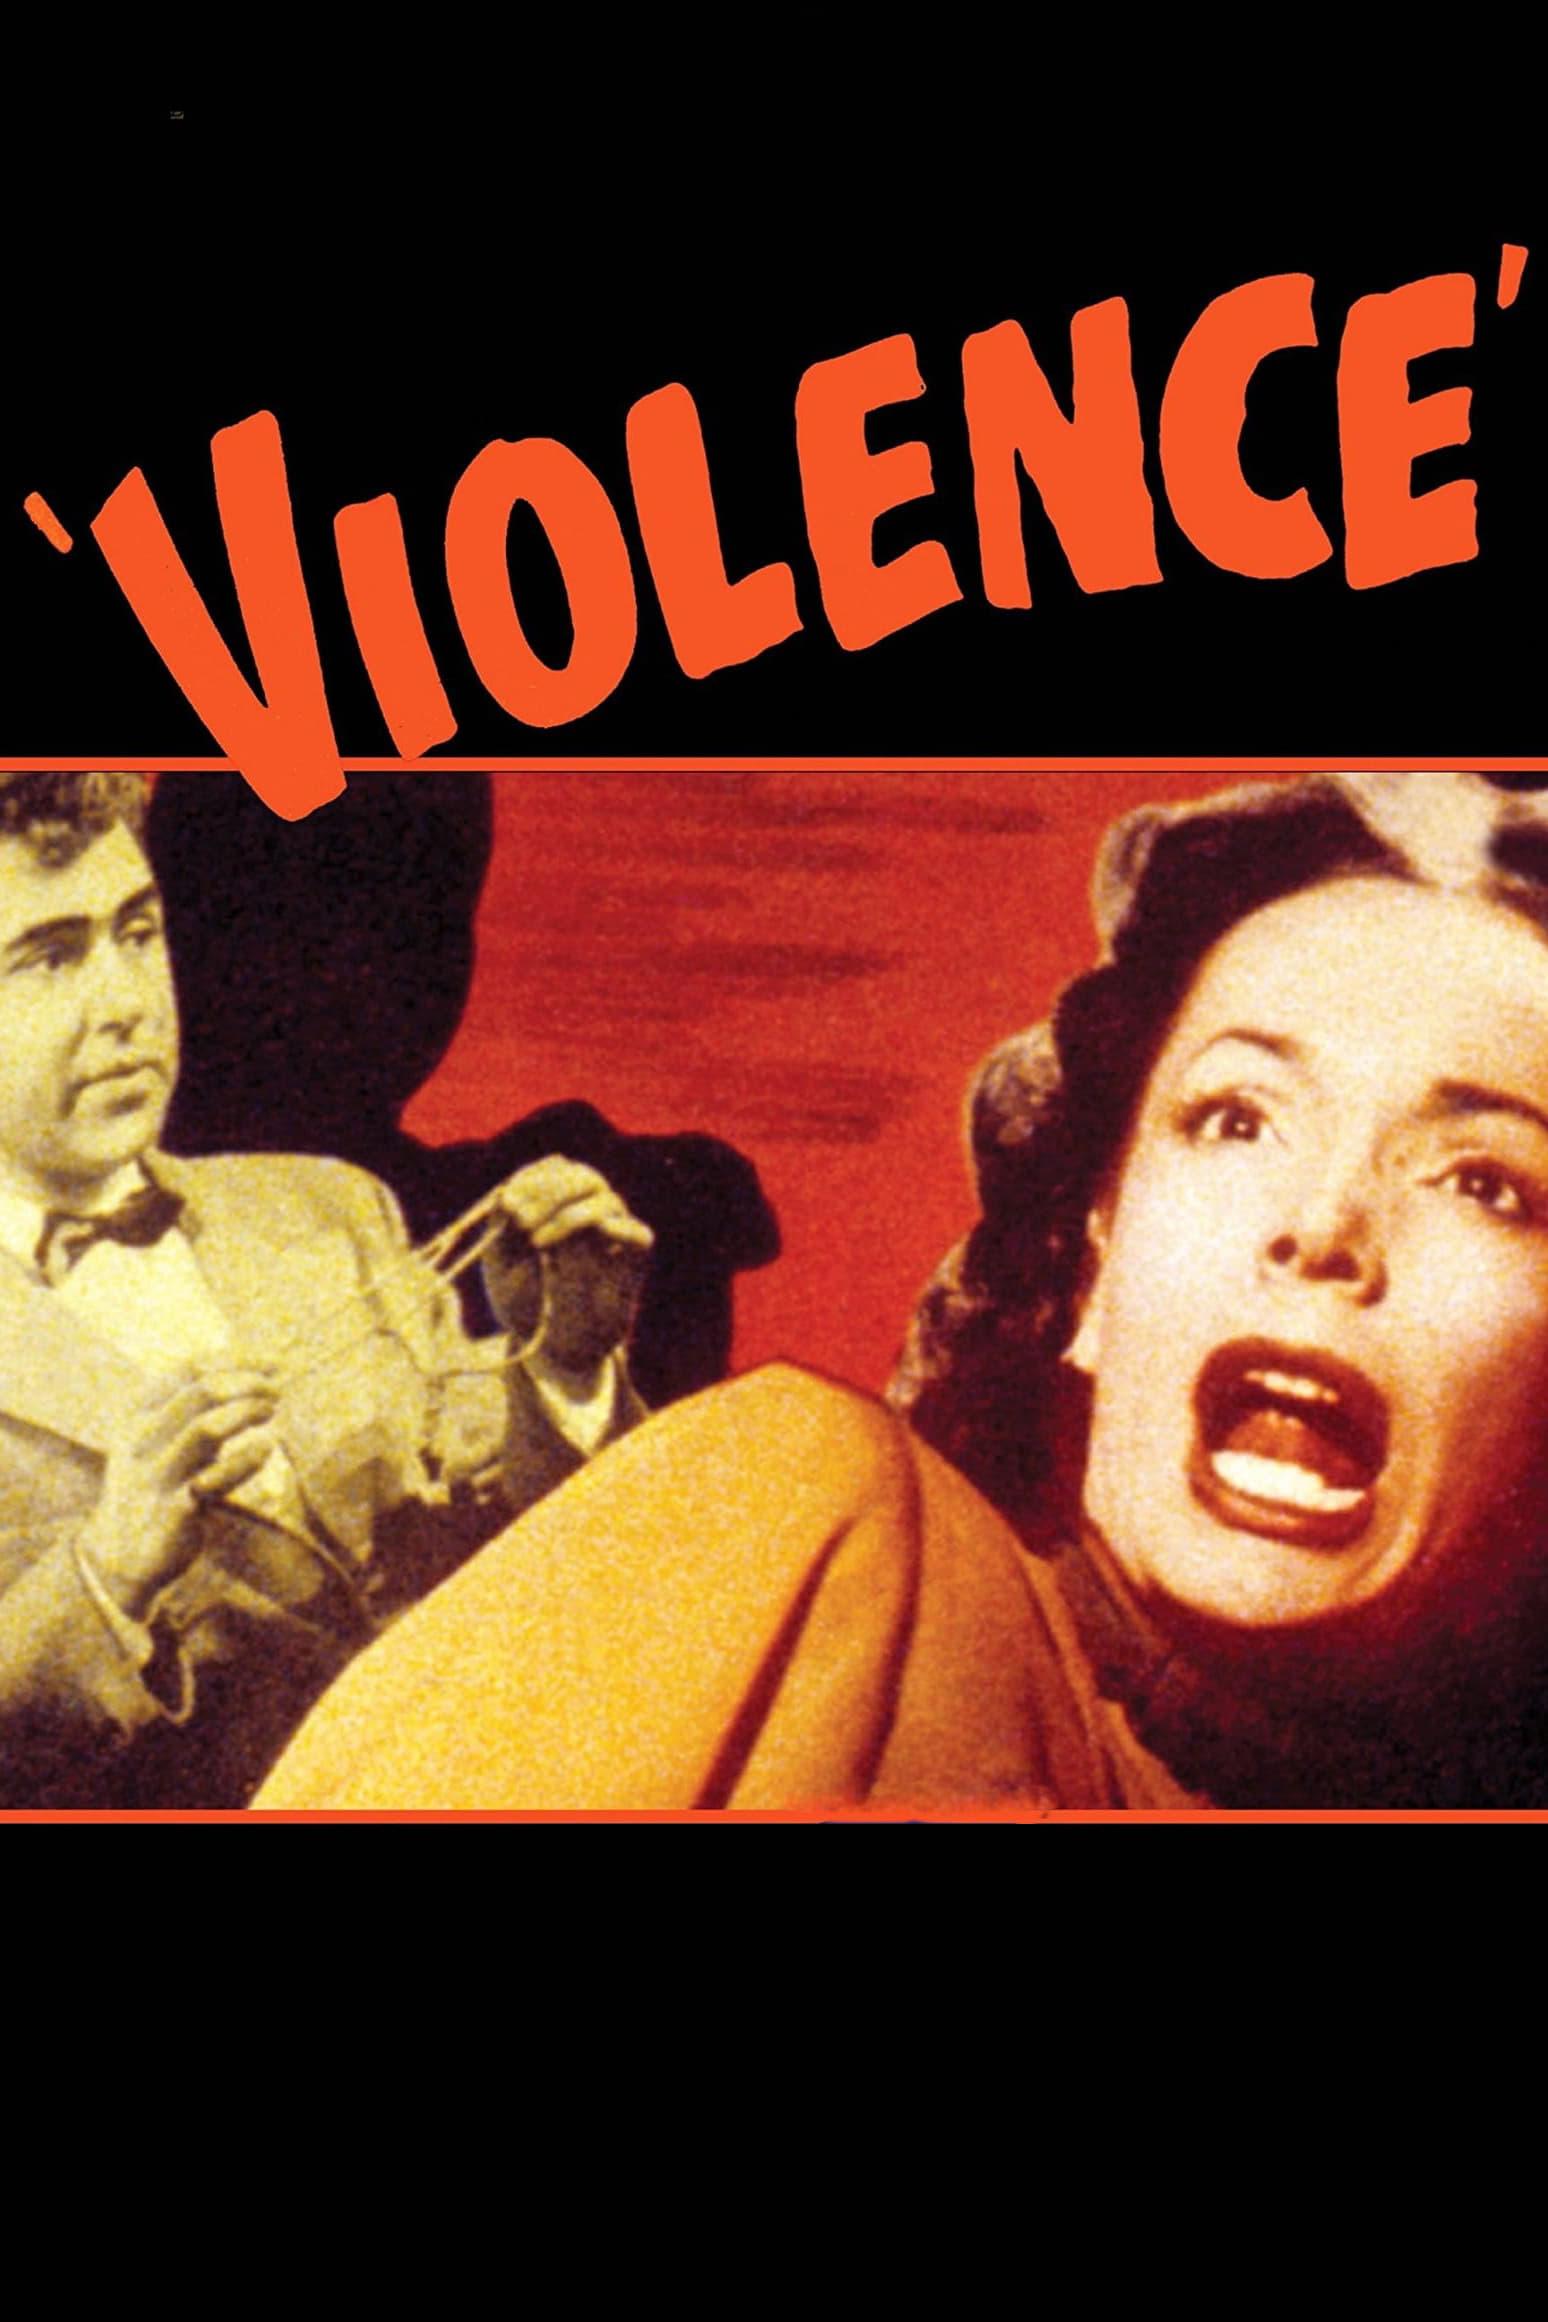 Violence poster